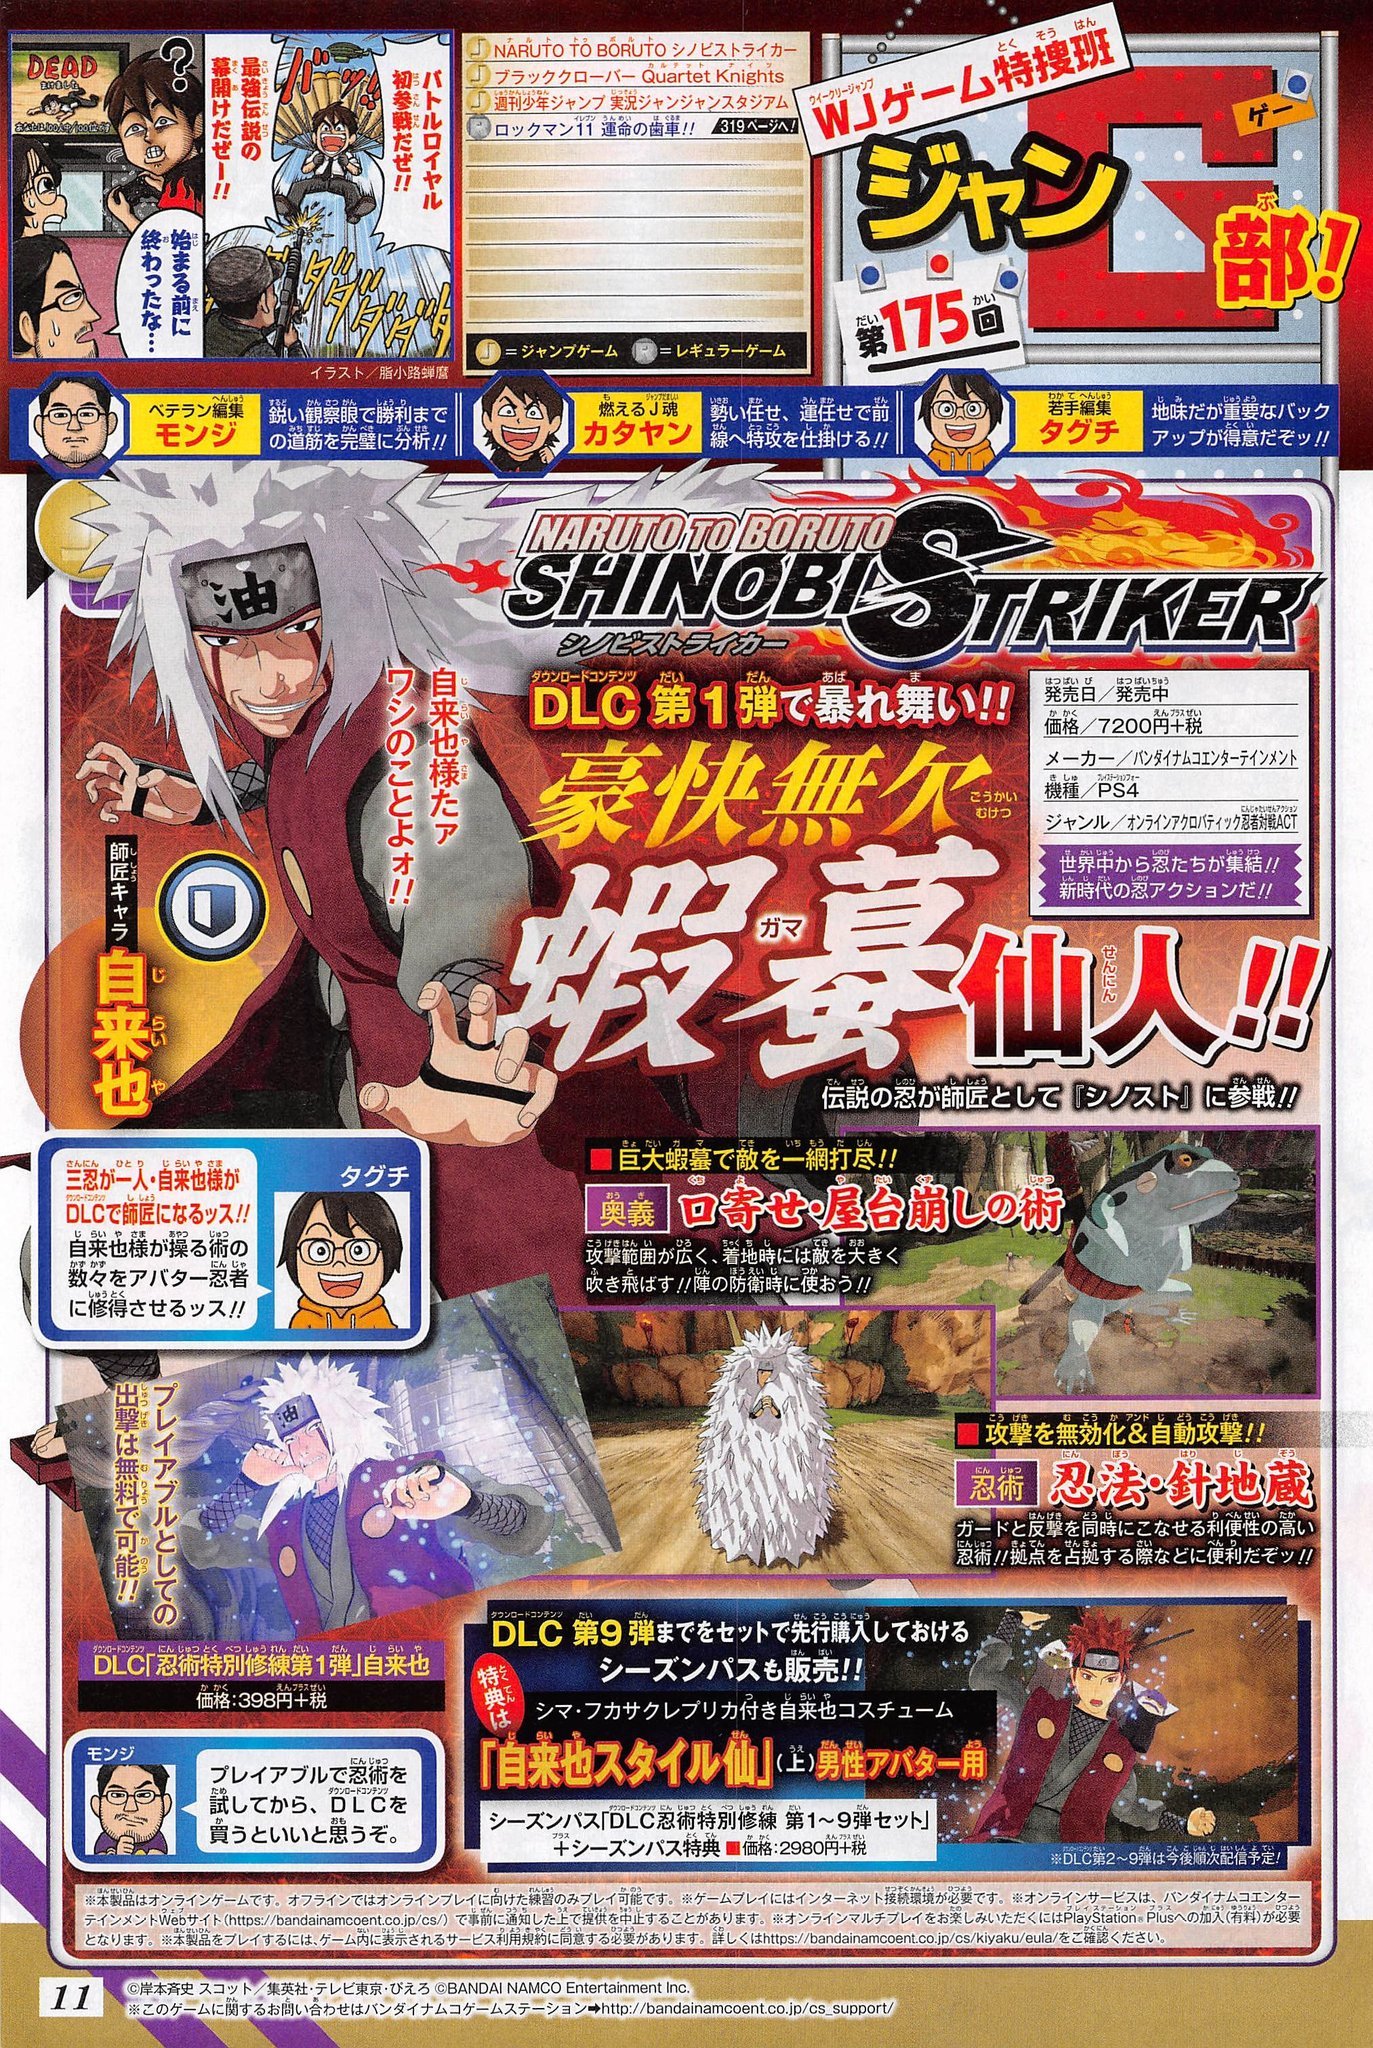 Naruto To Boruto Shinobi Striker Dlc Character Jiraiya Announced Gematsu